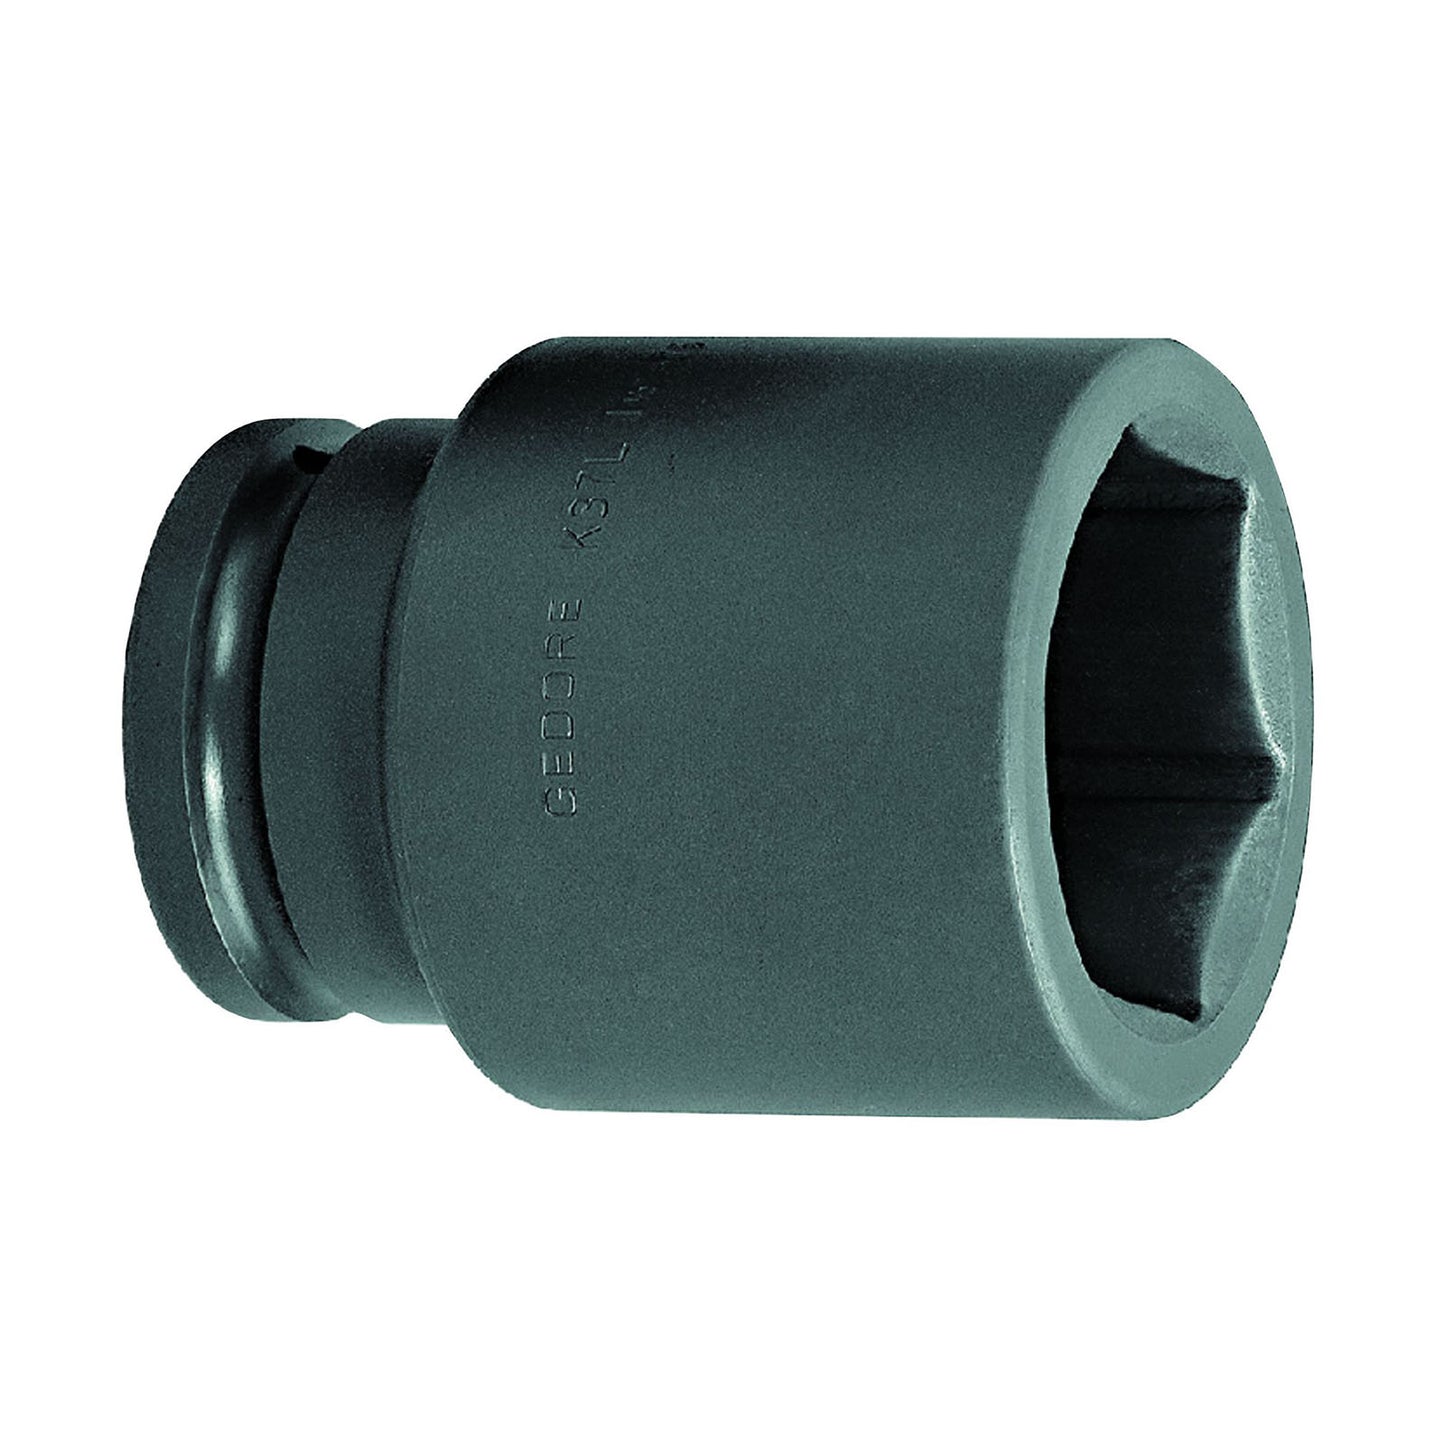 GEDORE K 37 L 80 - XL Impact Socket 1.1/2", 80 mm (6331000)